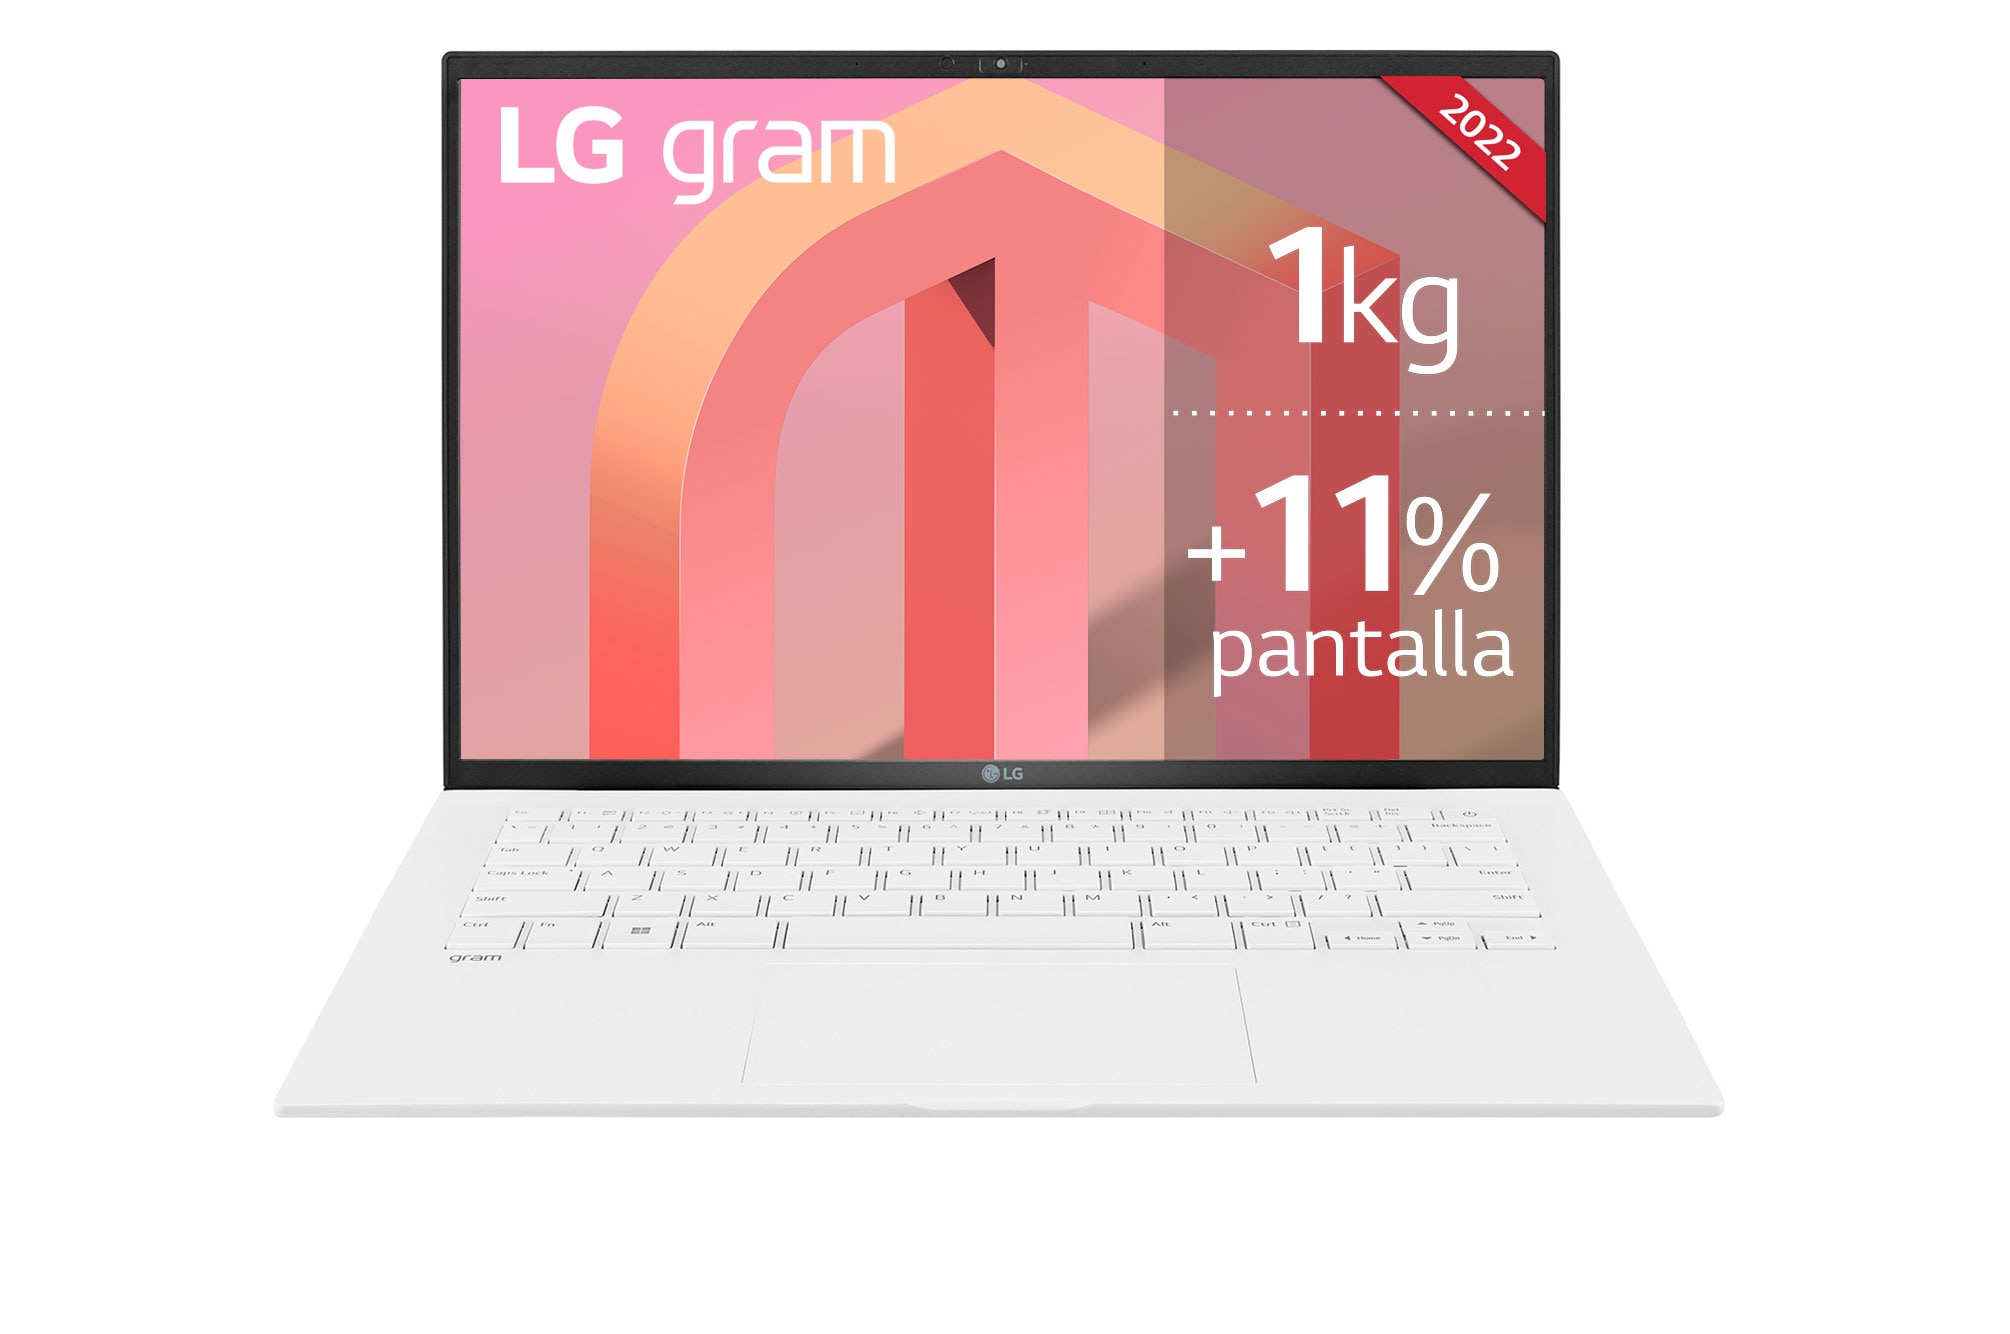 LG Gram 14, el ultraportátil con Core i7 y 16GB de RAM en oferta por 500€  menos